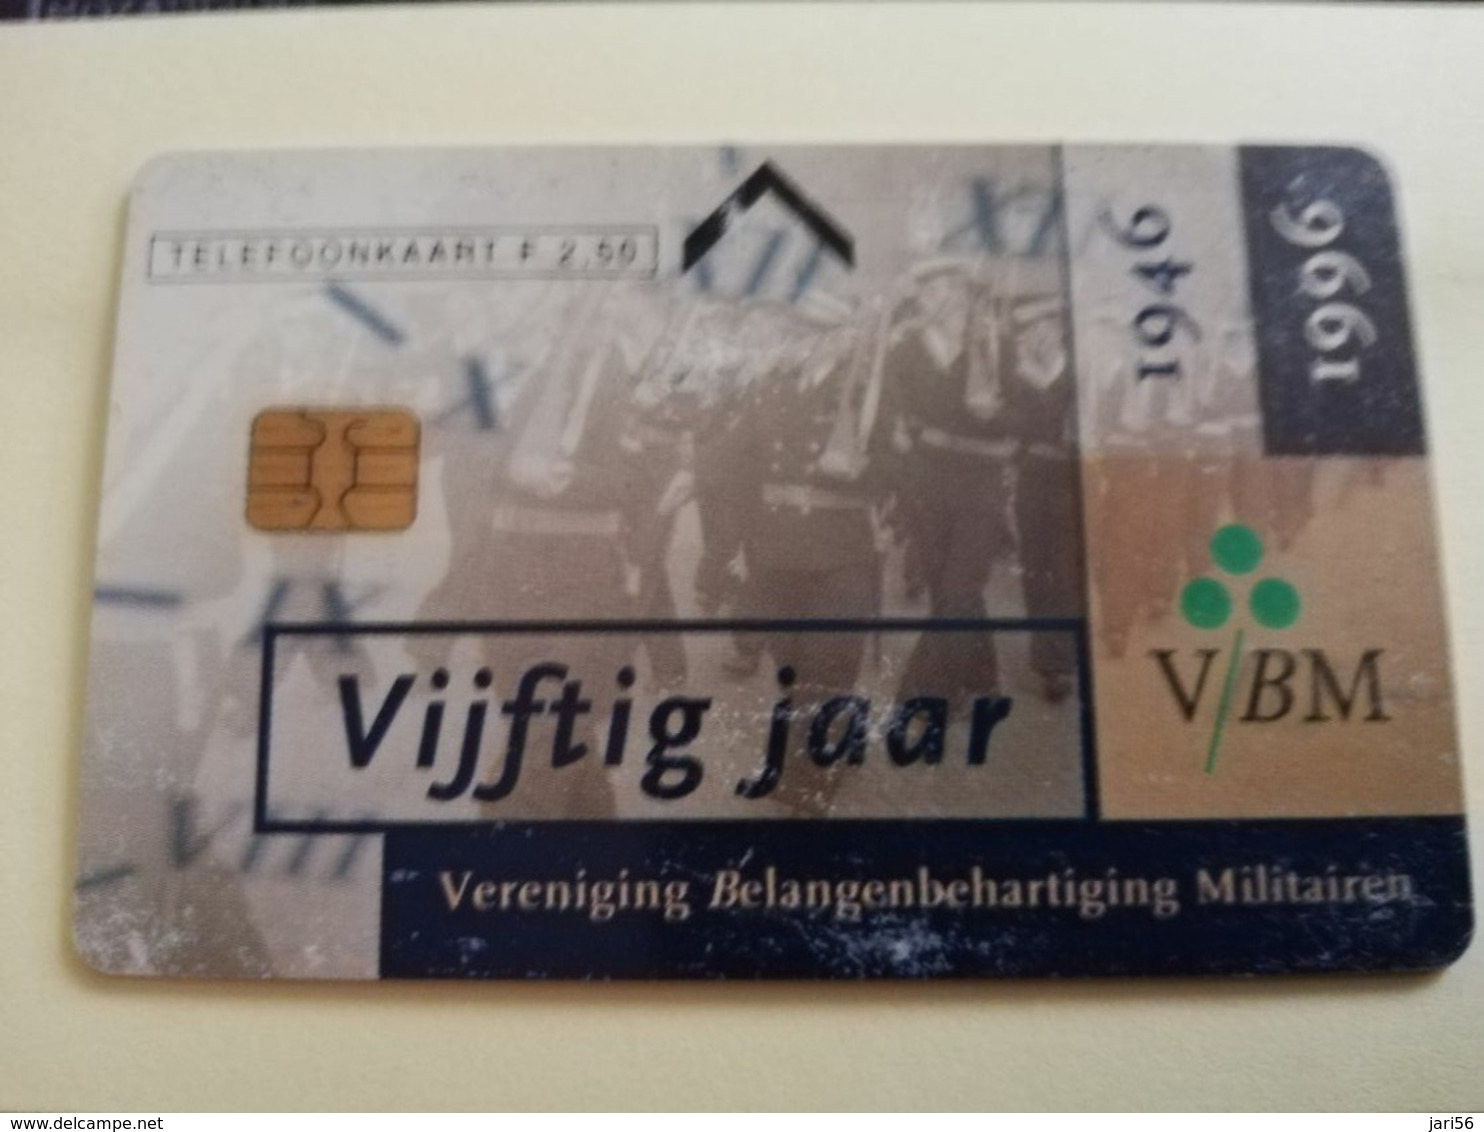 NETHERLANDS  ADVERTISING CHIPCARD HFL 2,50   CRD 275  VIJFTIG JAAR VBM VAKBOND MILITAIREN          Fine Used   ** 3209** - Privé